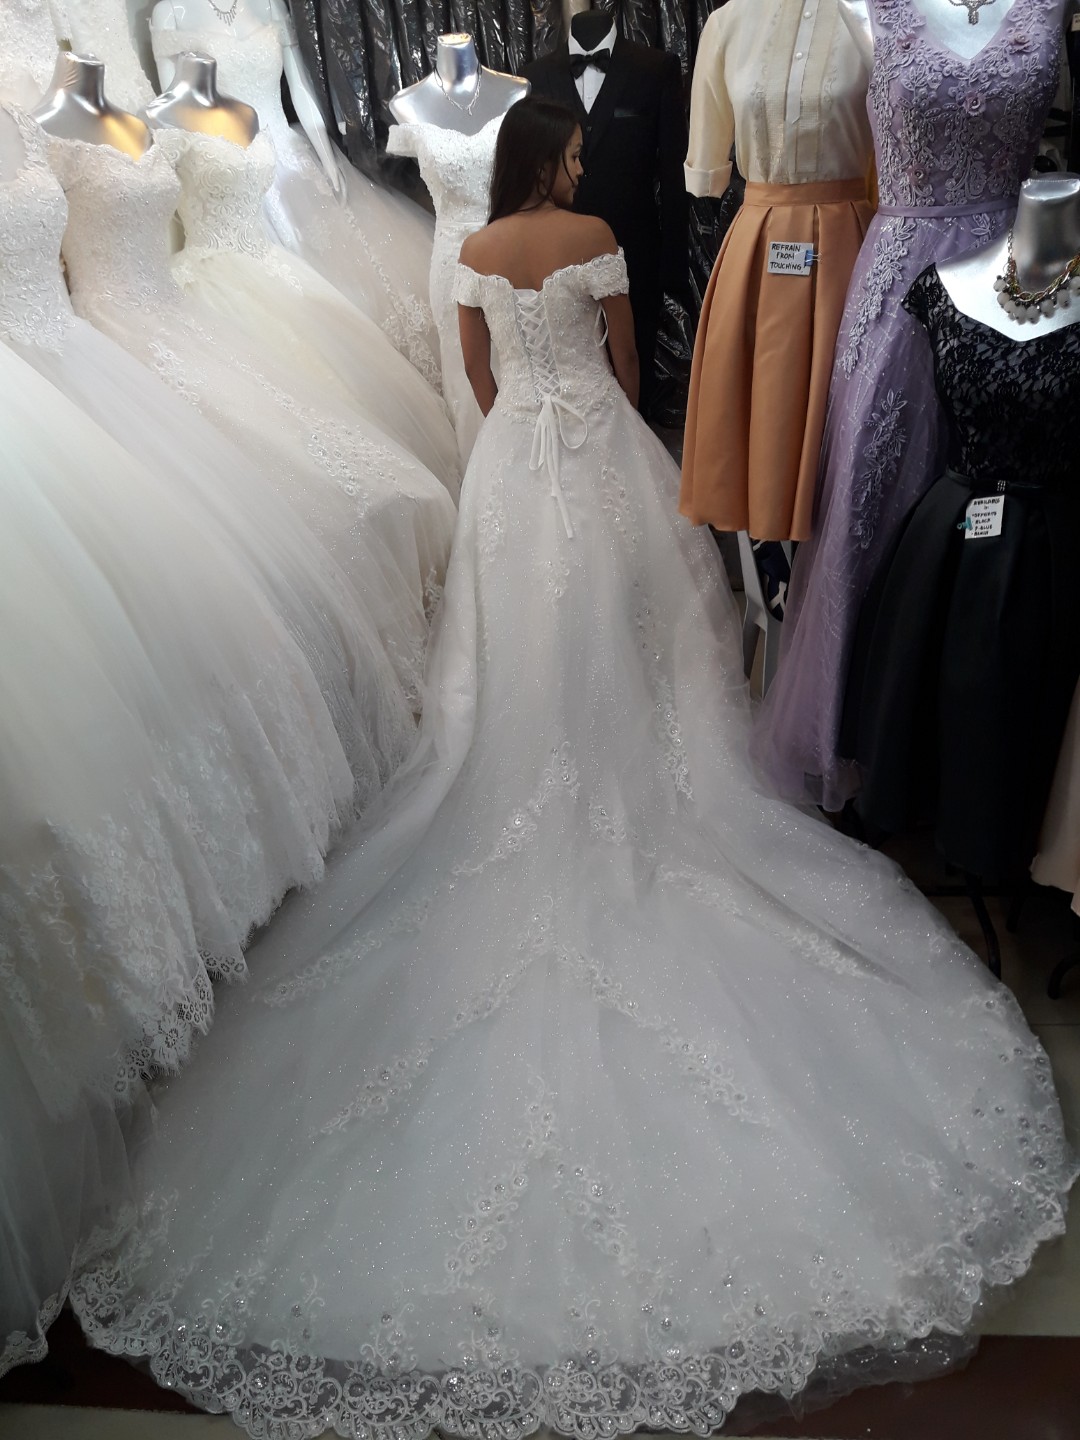 wedding gown in divisoria 2019